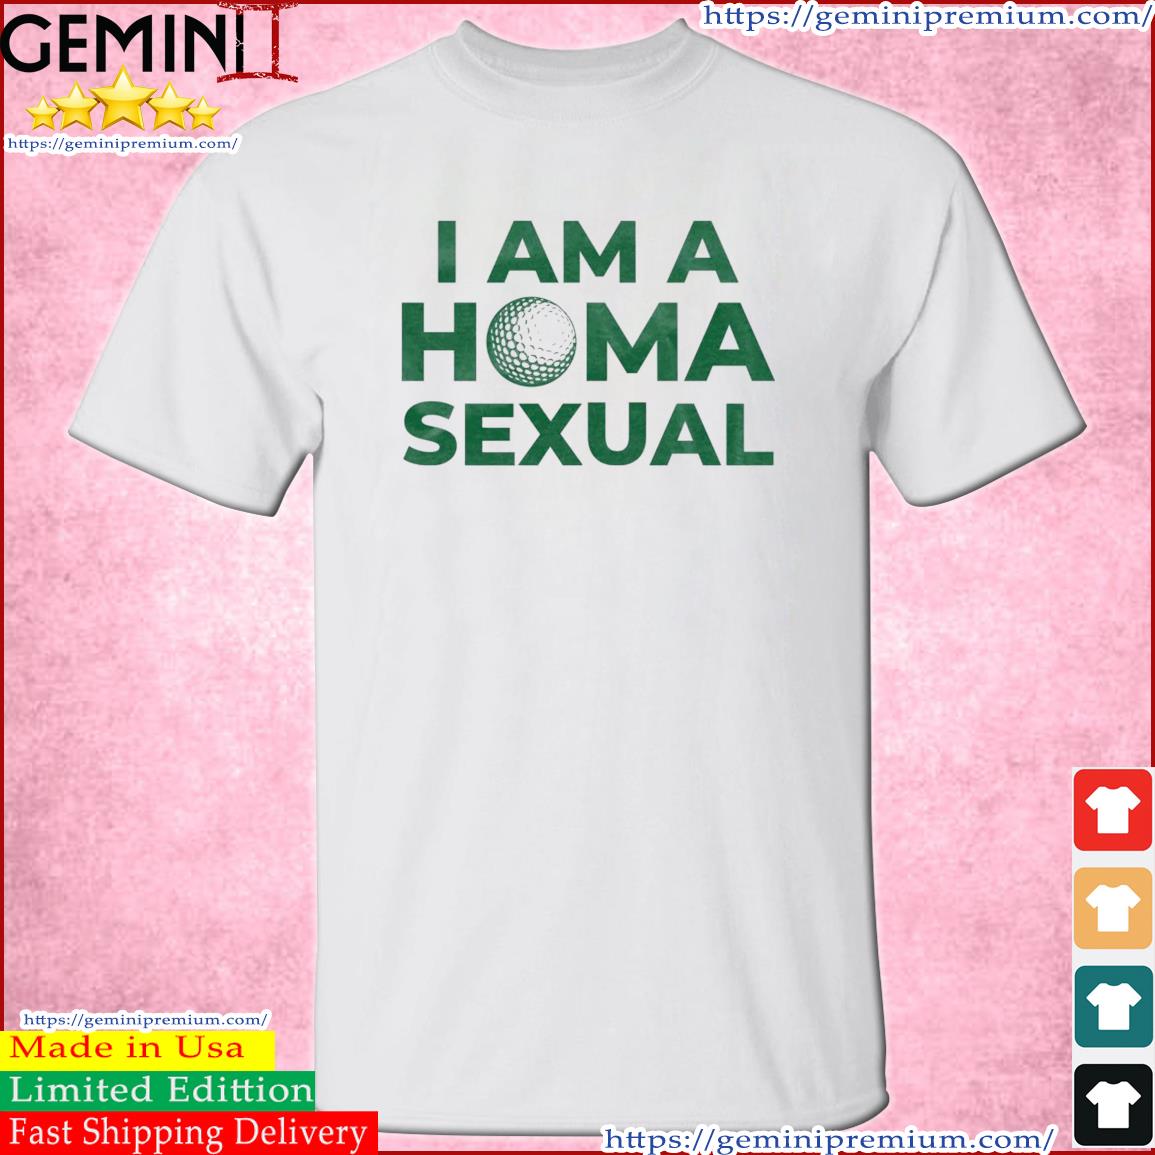 Homasexual St Patrick's Day Shirt